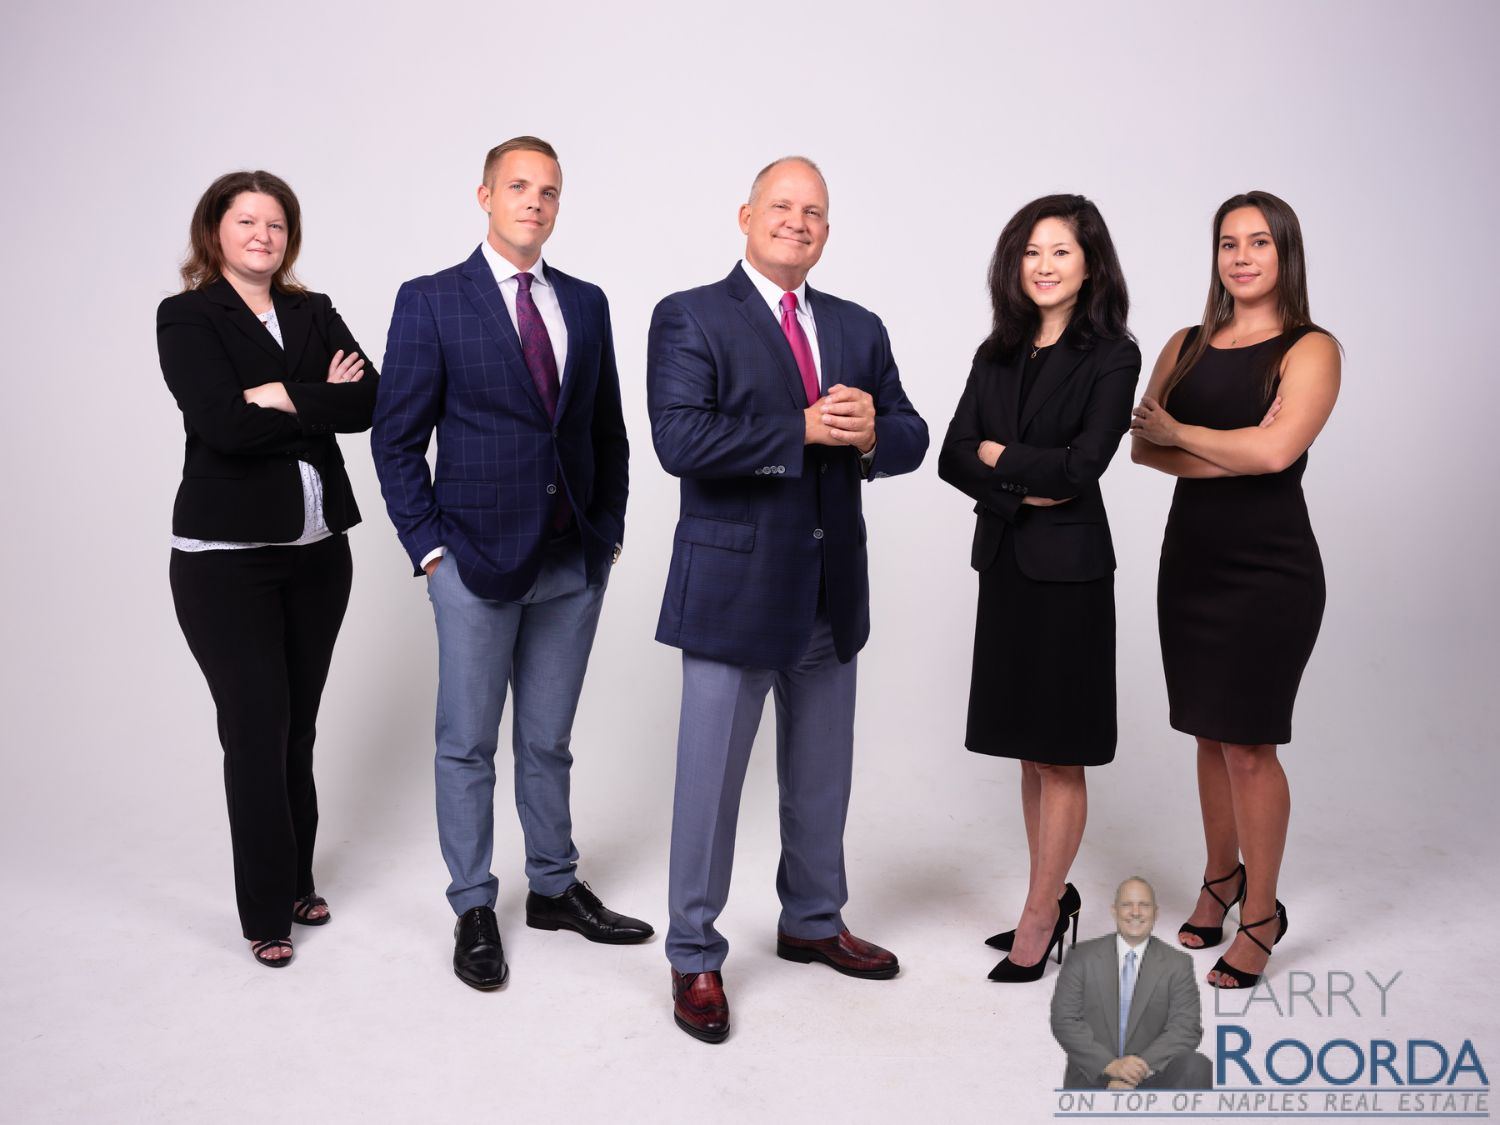 Larry Roorda Naples, Florida luxury real estate team.